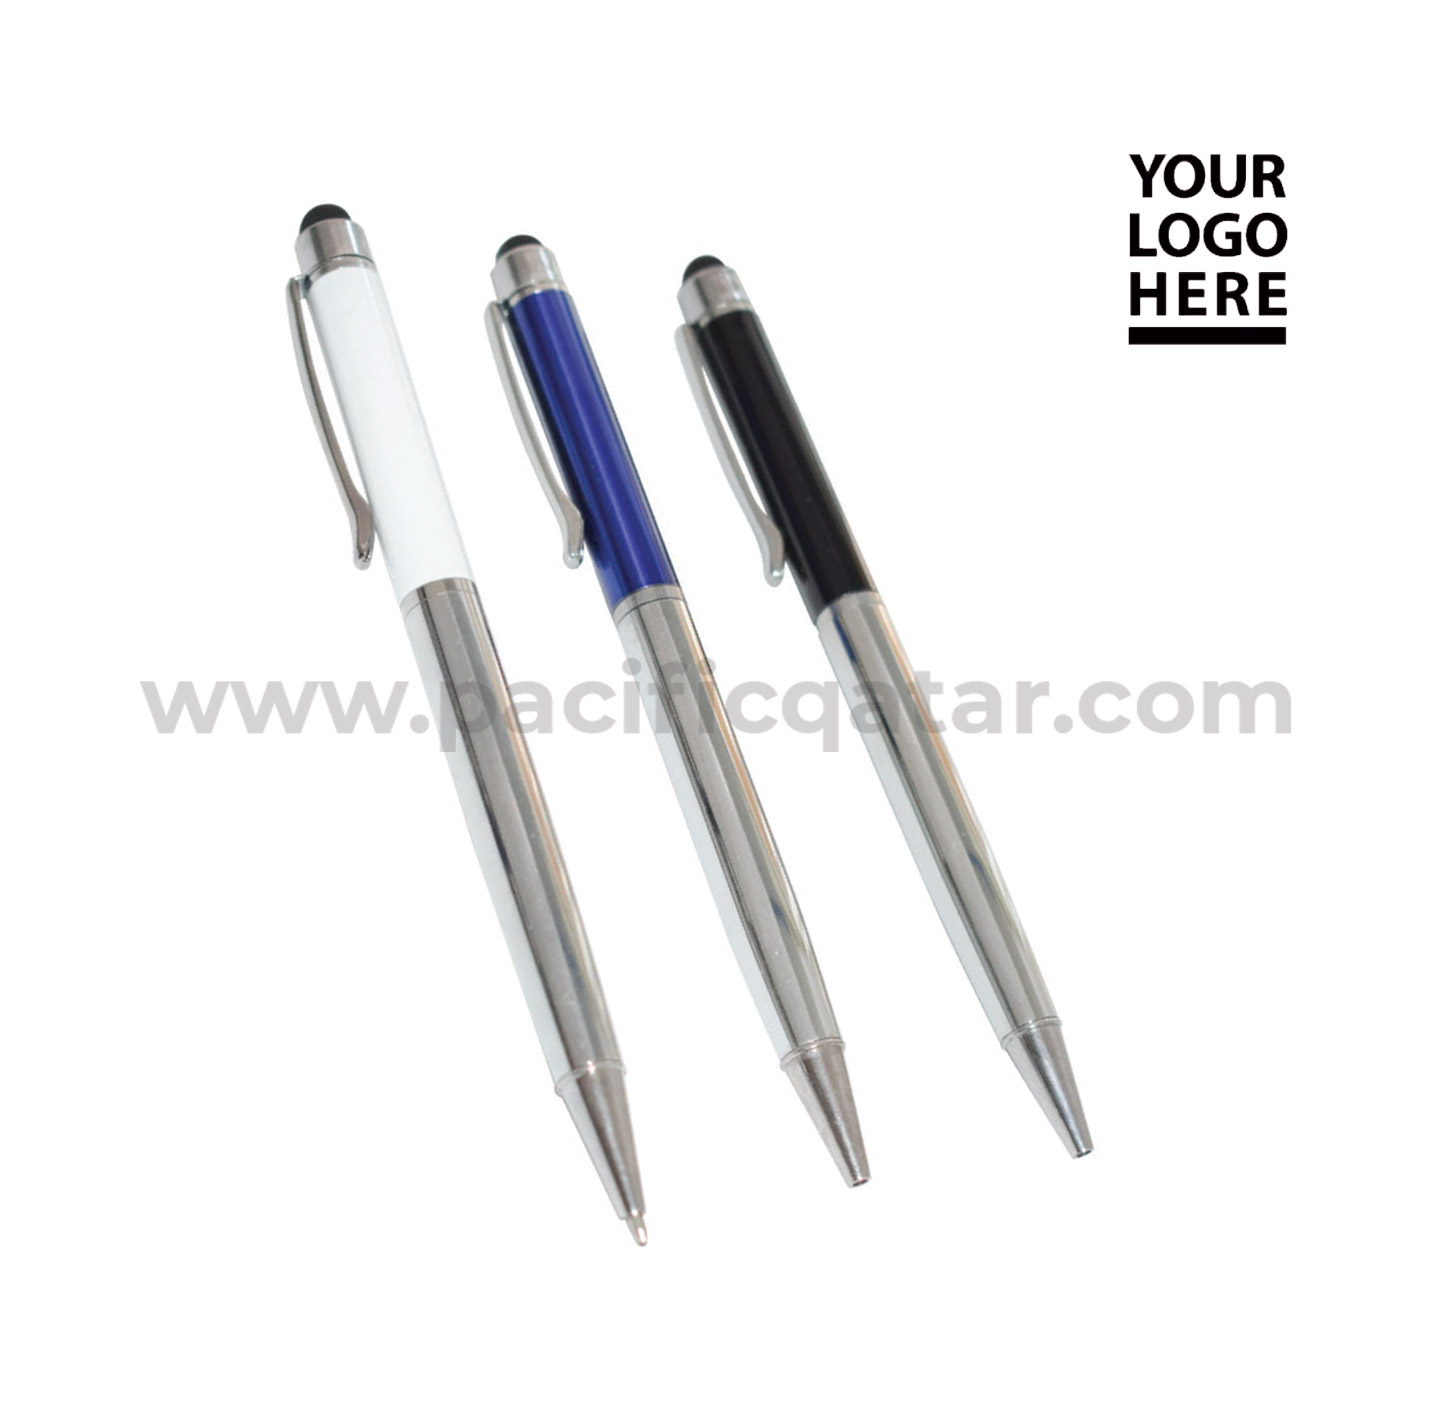 Metal stylus pen